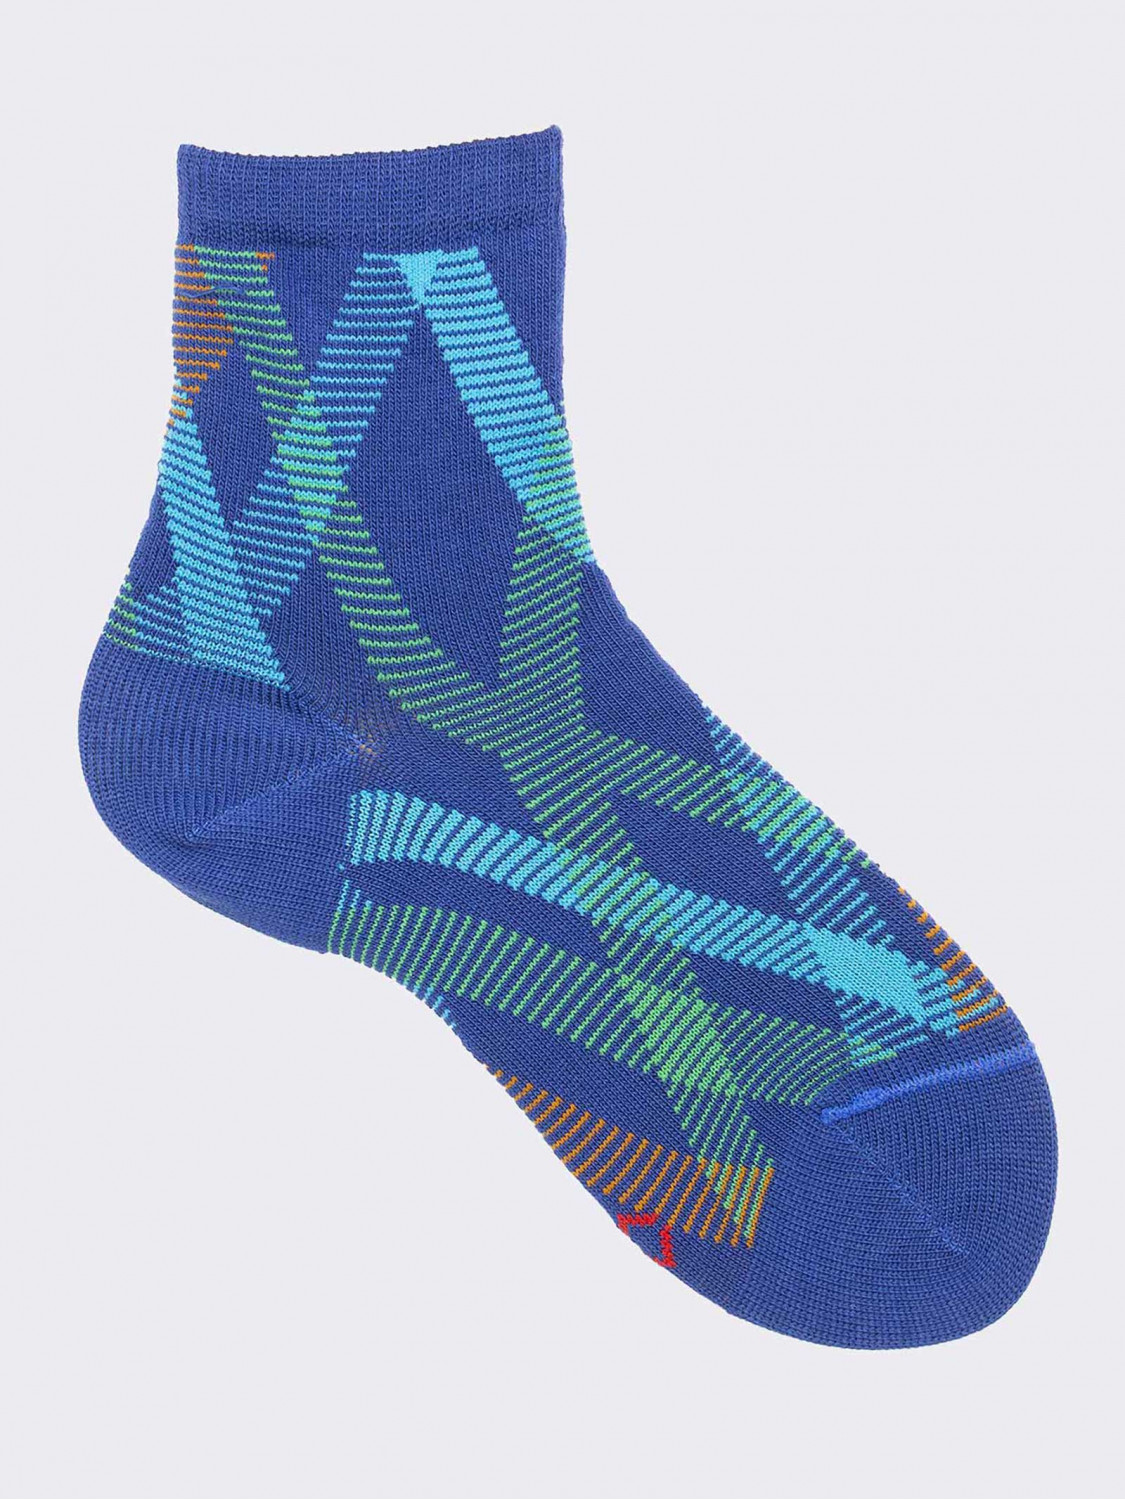 Short socks in geometric pattern in warm cotton